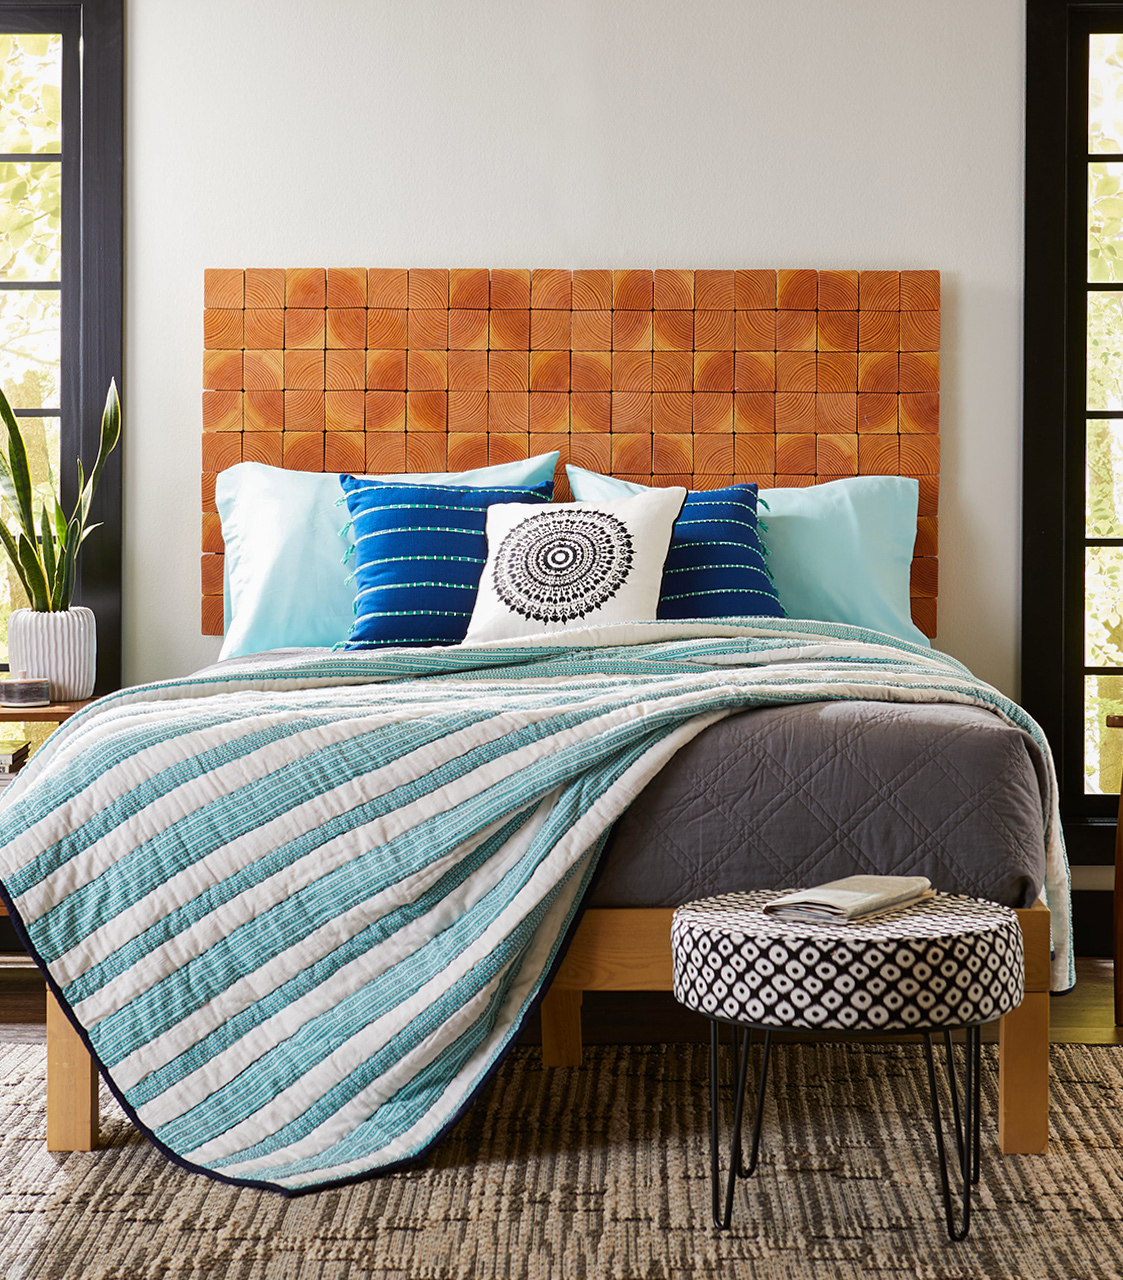 Đầu giường được ốp bằng những tấm gỗ MDF hình vuông nhỏ với đường vân trông rất tự nhiên, mang lại vẻ đẹp gần gũi và ấm áp, đồng thời tạo nên sự tương phản nhẹ nhàng với sắc xanh lam của chăn ga gối.